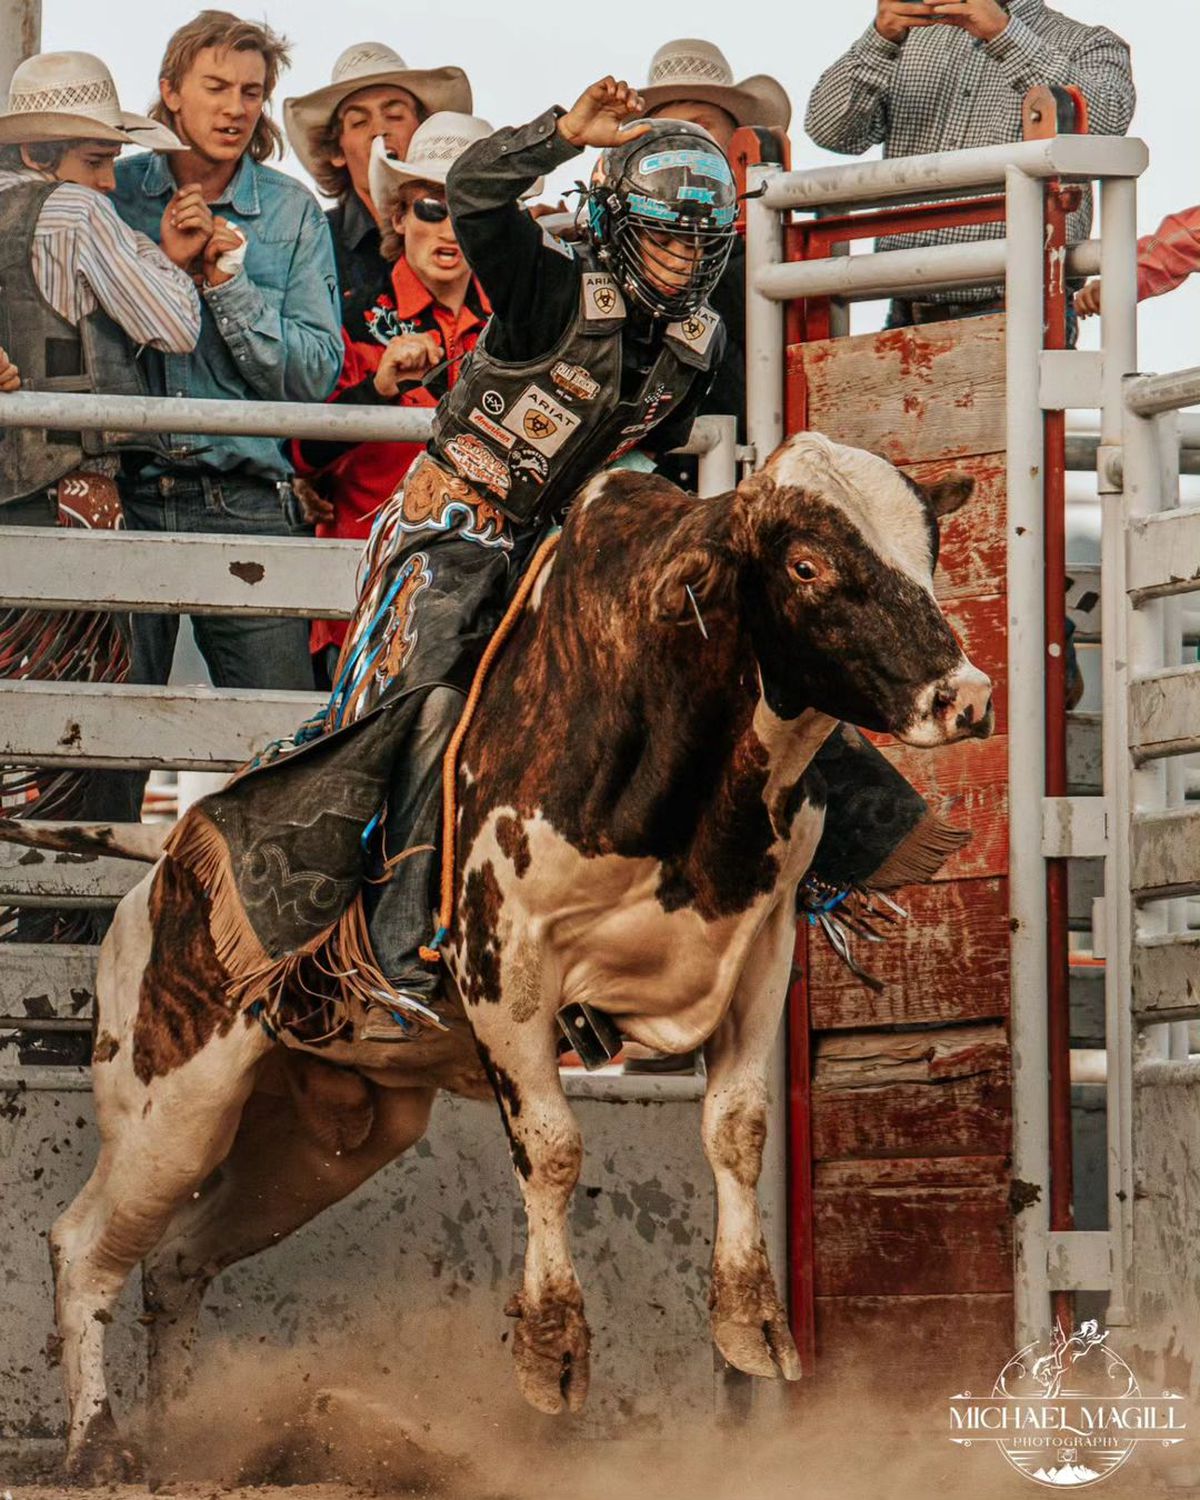 Najiah Knight vrea să devină prima femeie campioană mondială la rodeo cu tauri